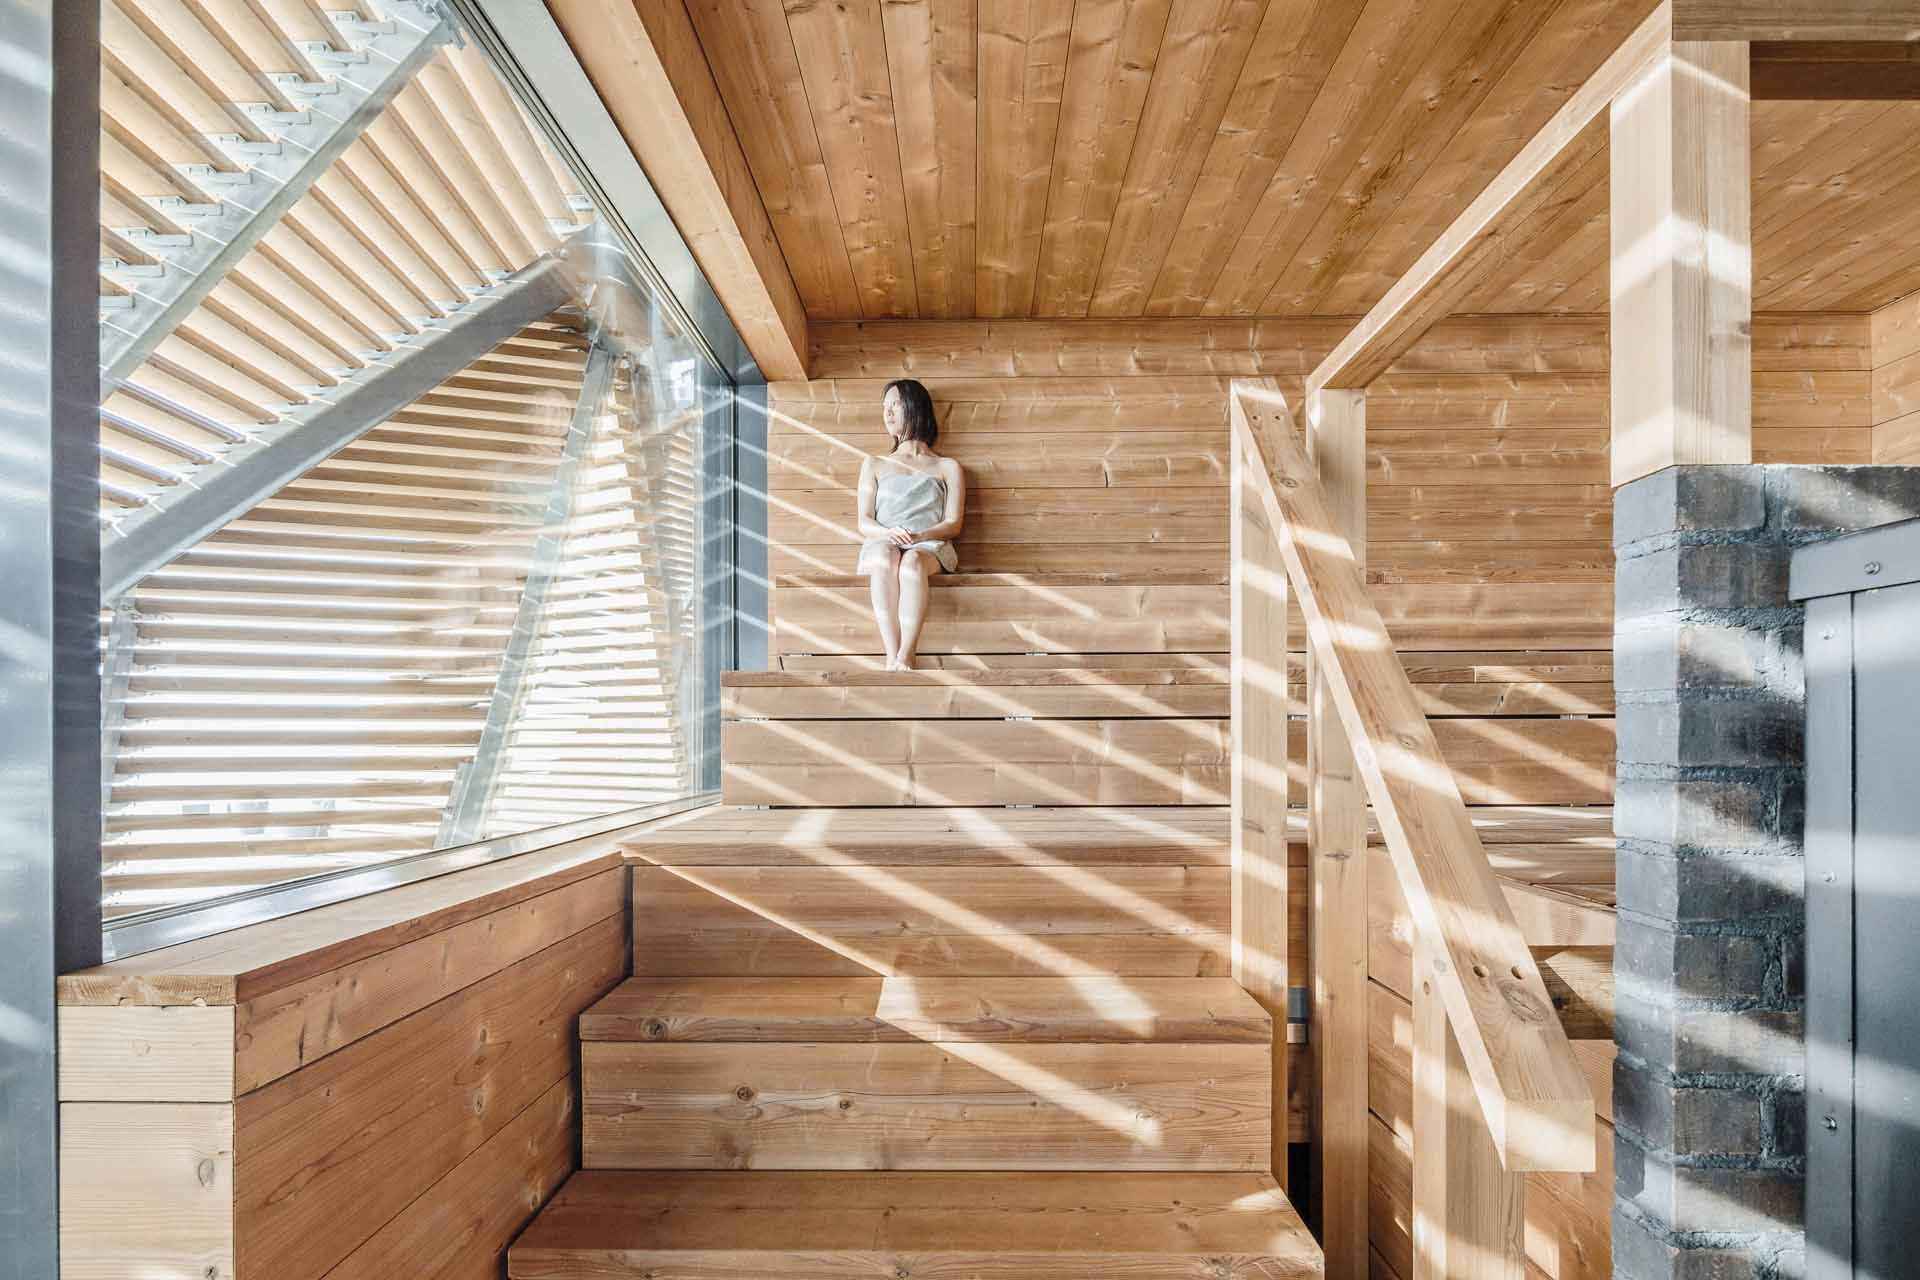 Löyly桑拿浴場。透過木頭結構的設計，從建築內部可以無遮擋欣賞海景，但建築外部的視線卻無法穿透入內。